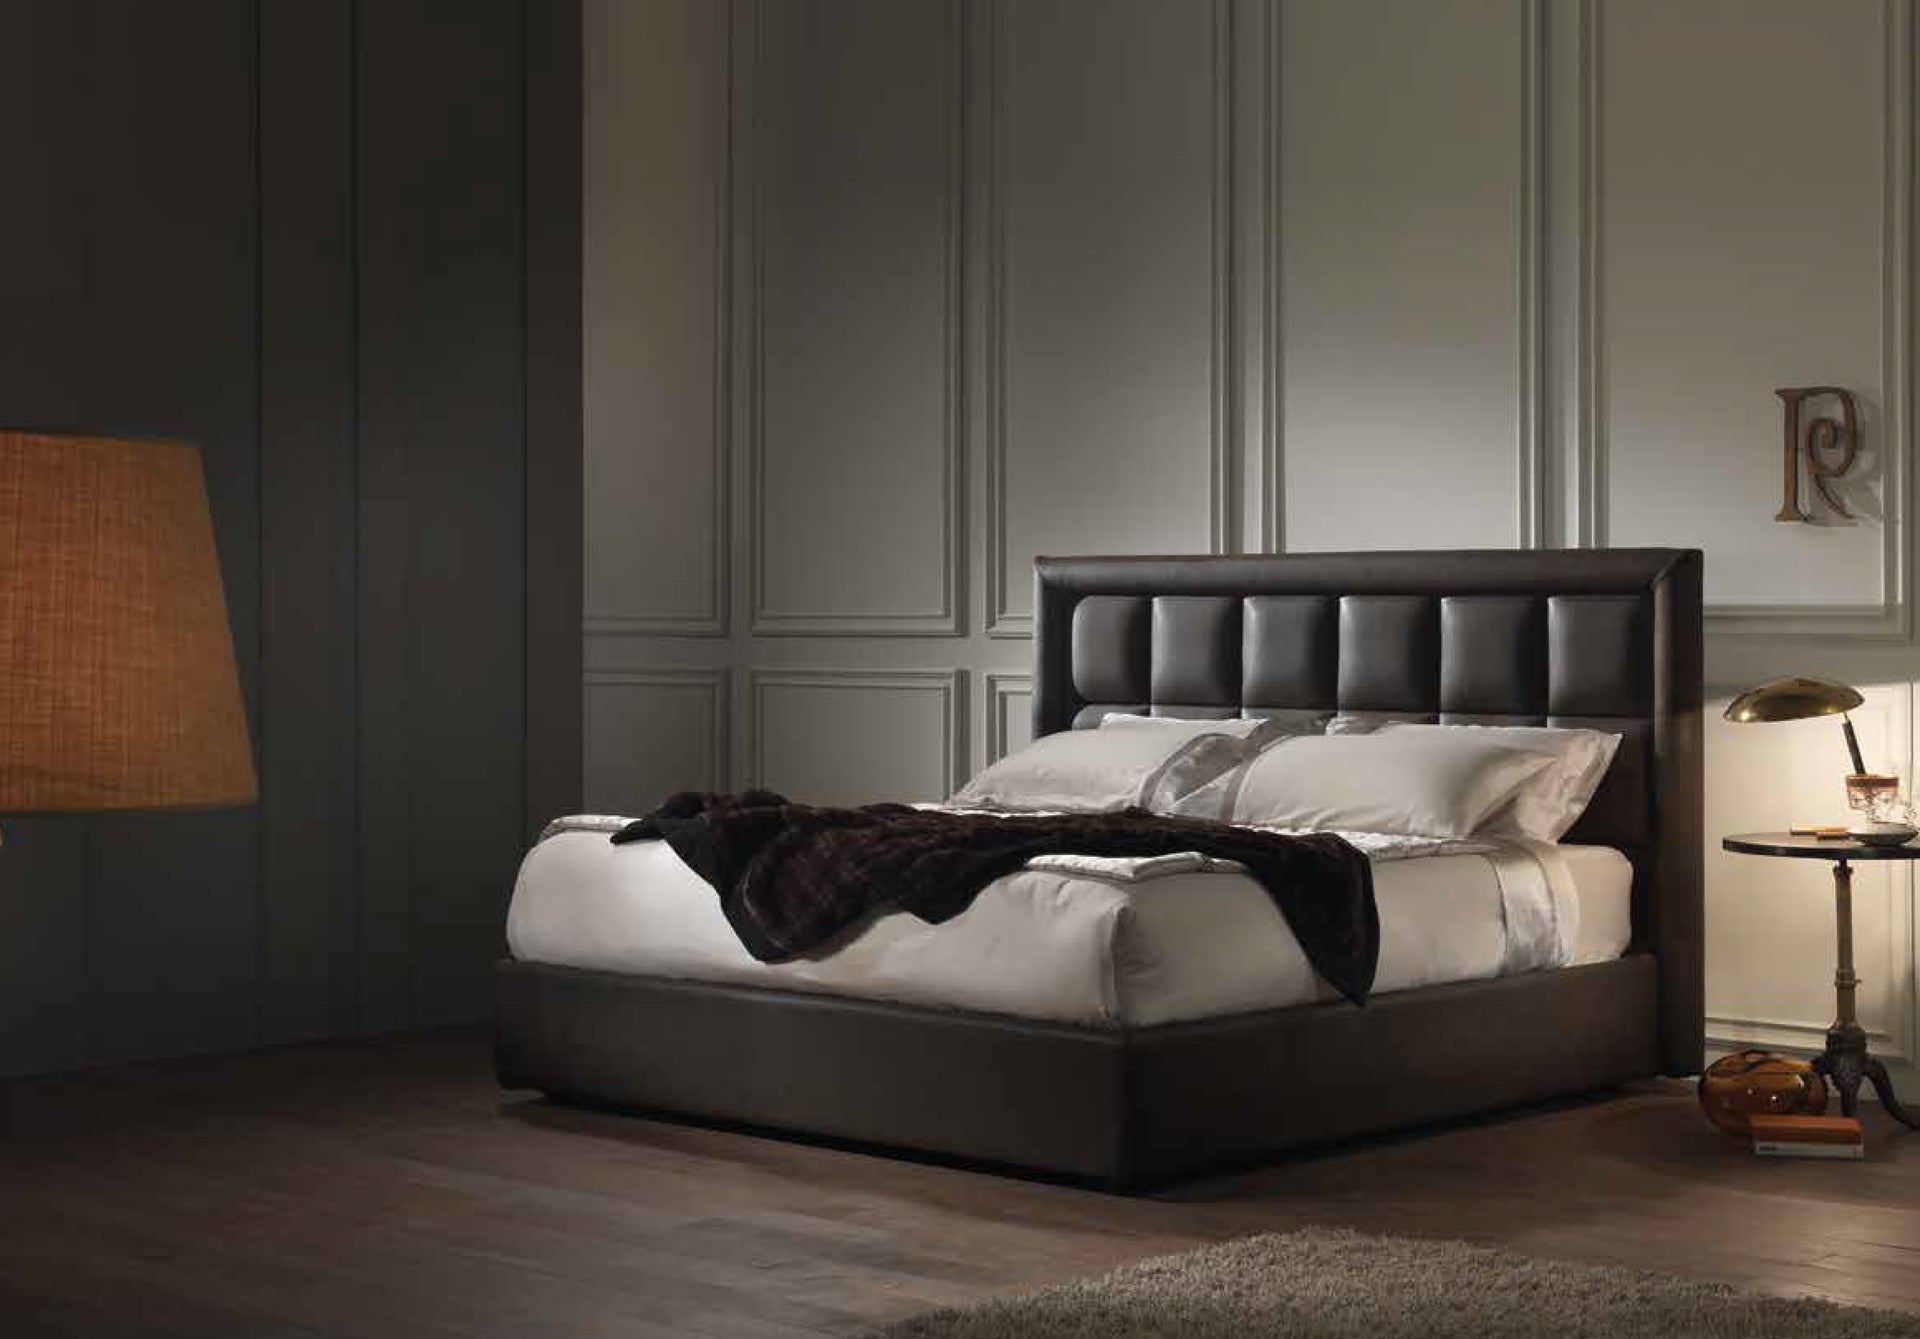 Dorelan mattress in a luxurious bedroom